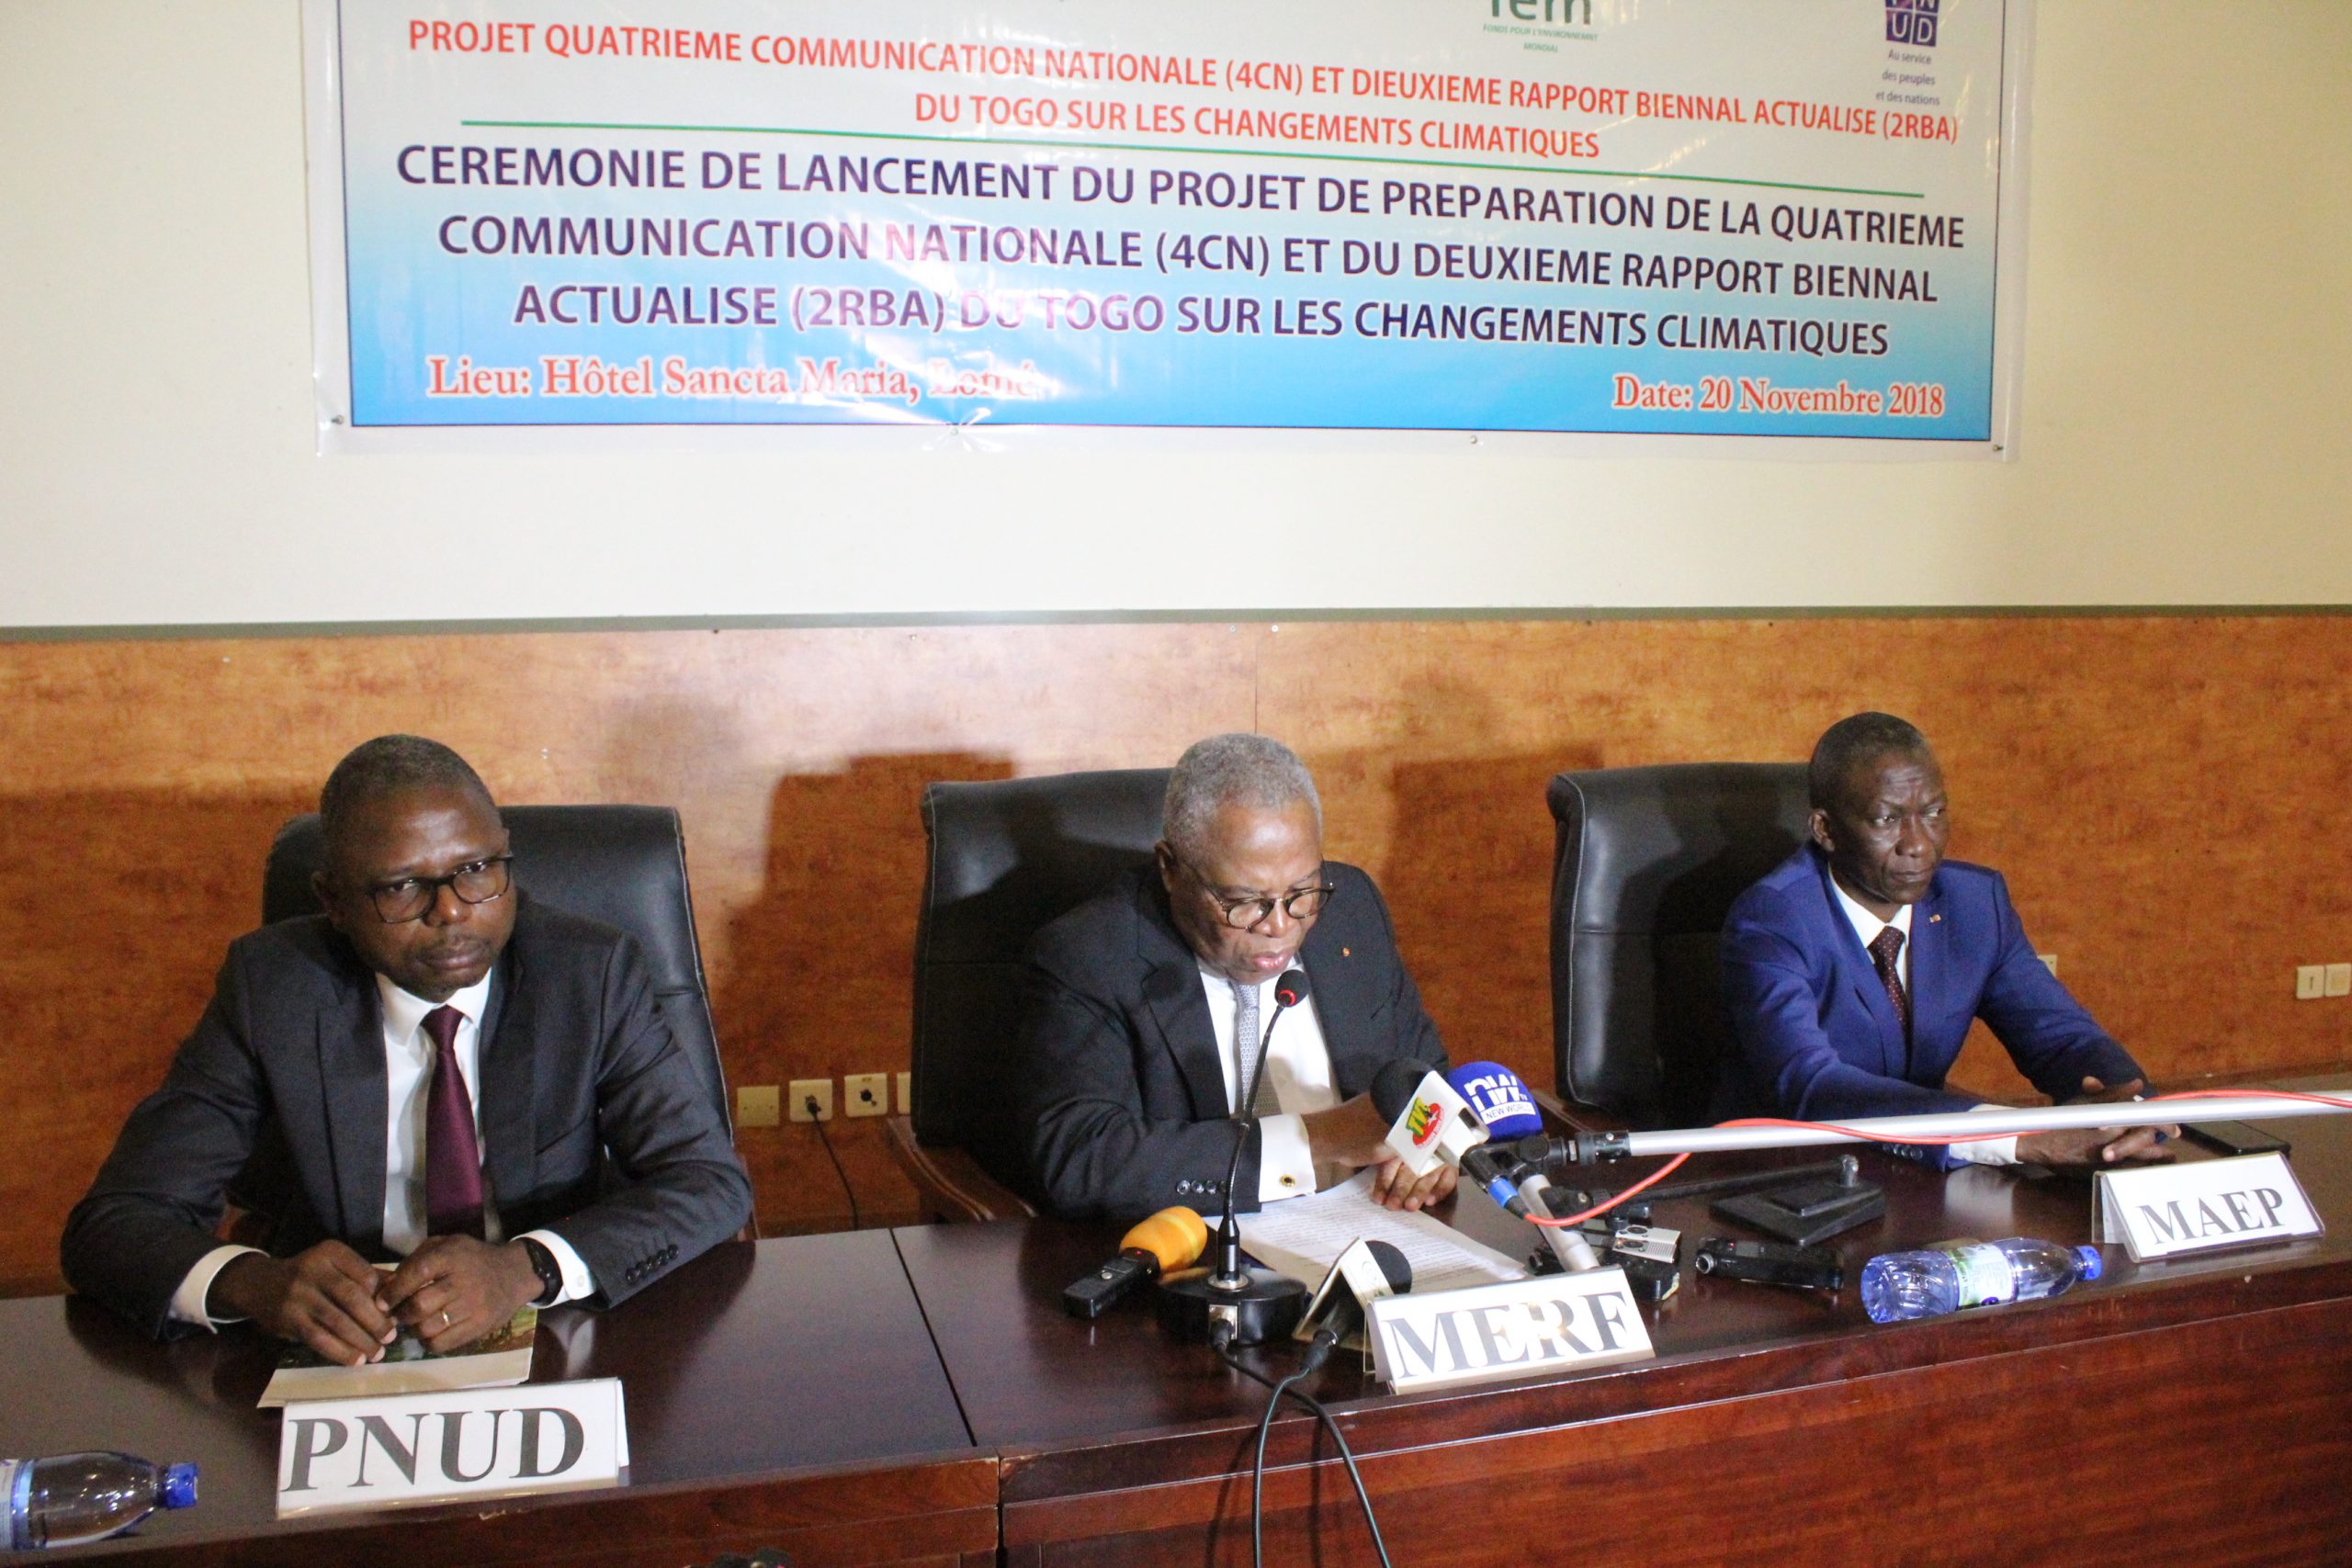  Deux projets sur les changements climatiques lancés au Togo